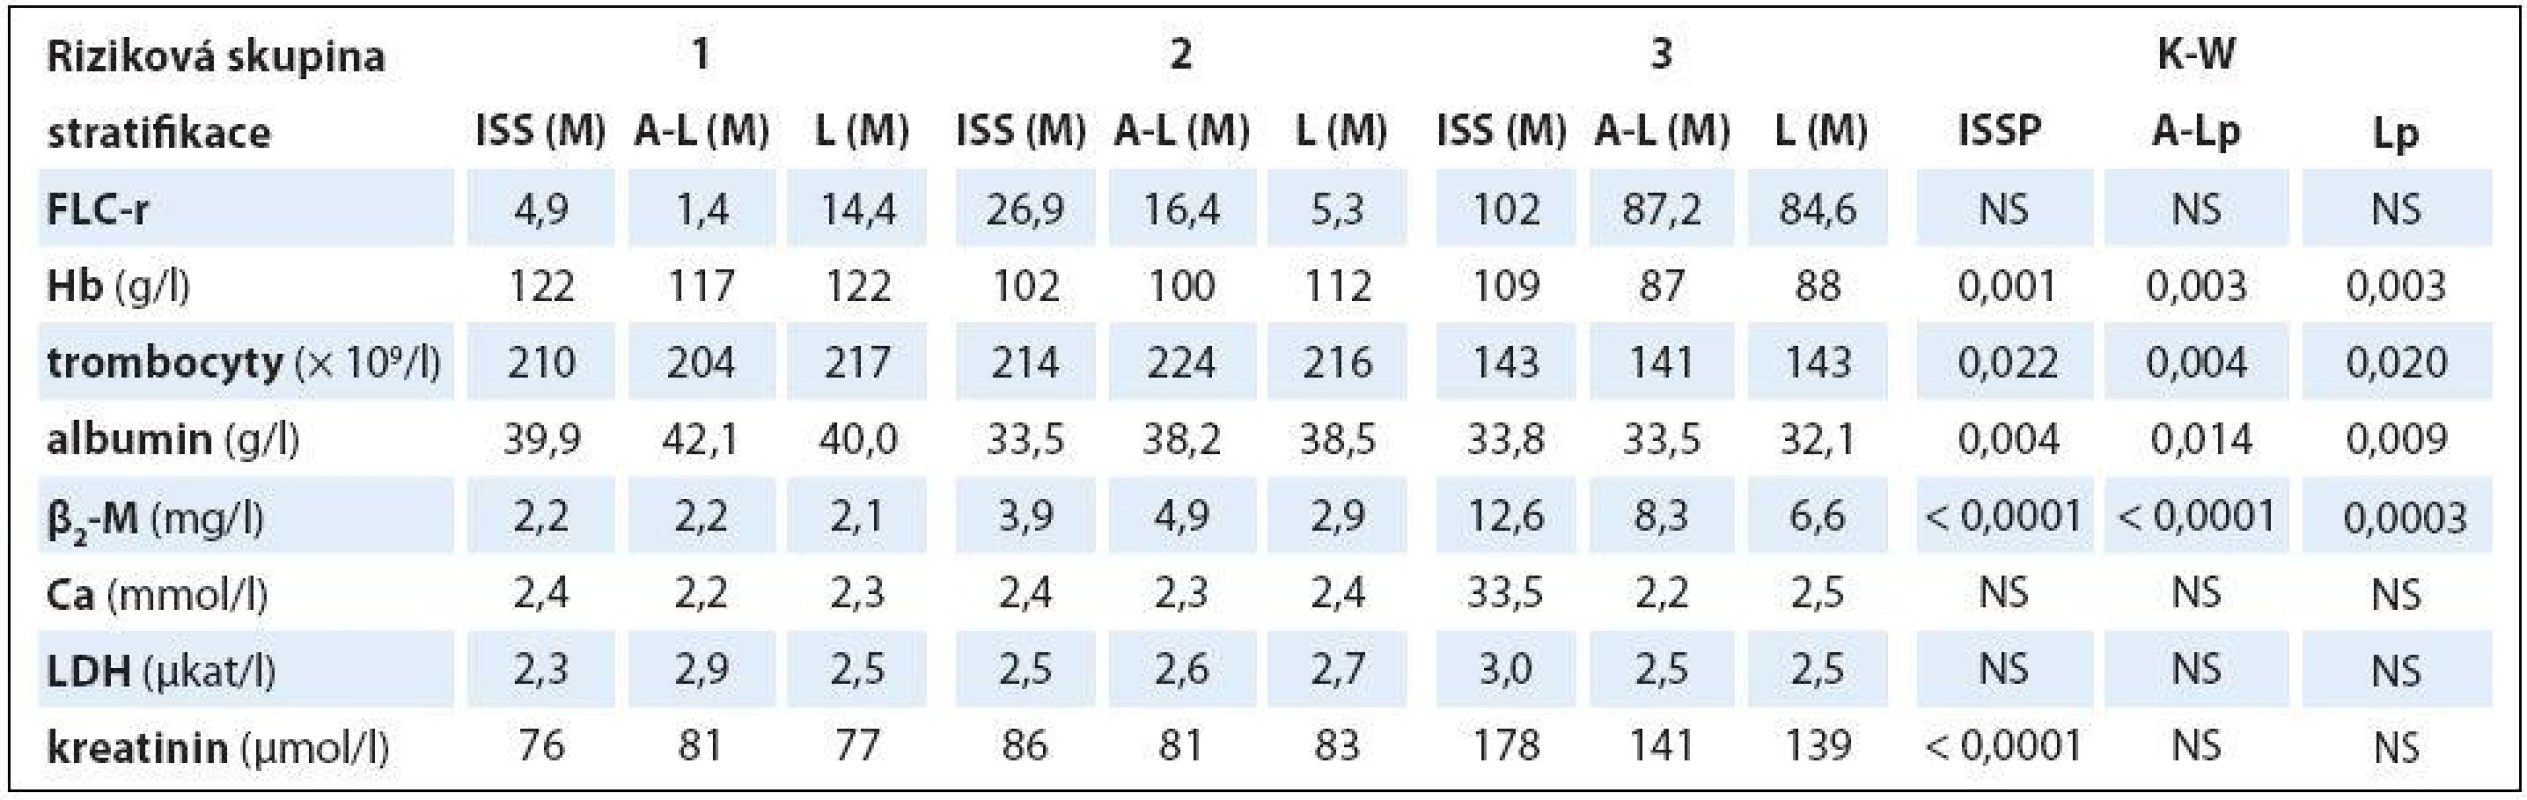 Souborná analýza vztahu vybraných prognostických laboratorních ukazatelů MM k stadiím (dle Durieho-Salmona – D-S a International Staging System – ISS) a rizikovým skupinám 1–3 vyhodnoceným podle Avet-Lousiaua (A-L) a Ludwiga (L) s pomocí Kruskalova-Wallisova testu v souboru 38 nemocných s IgA typem myelomu.